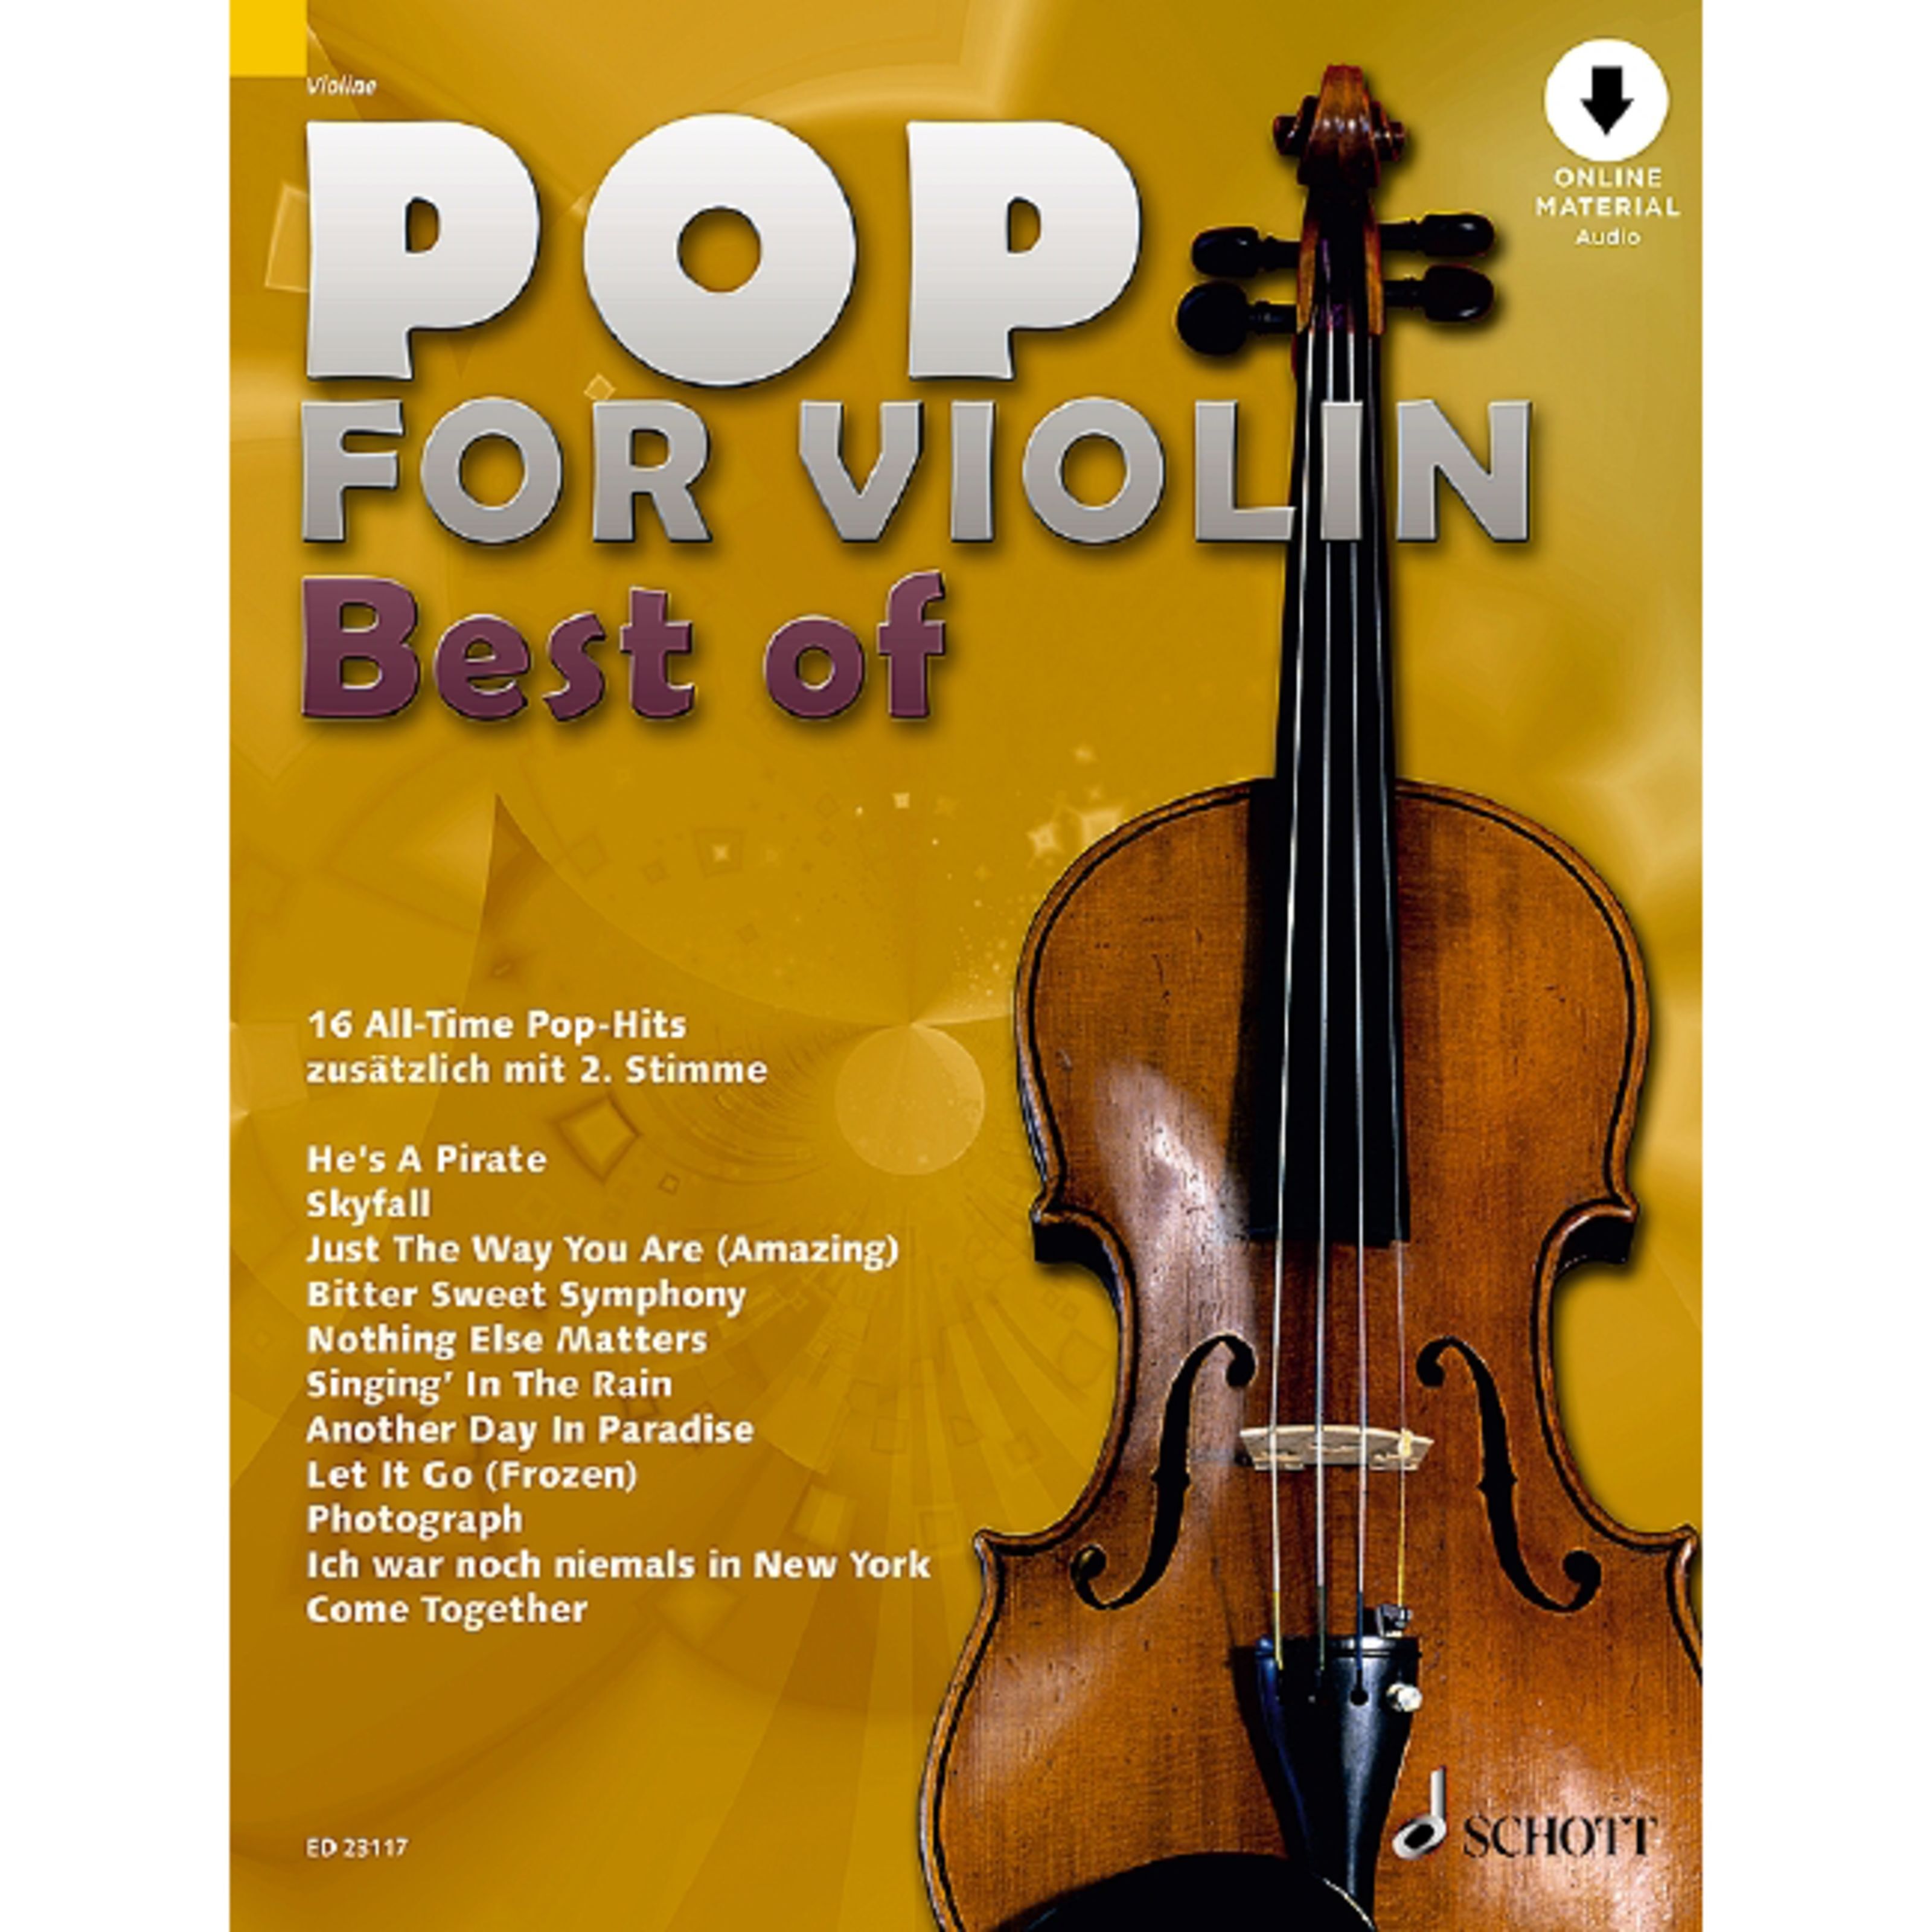 Schott Music Pop for Violin - Best of - Noten für Streichinstrumente